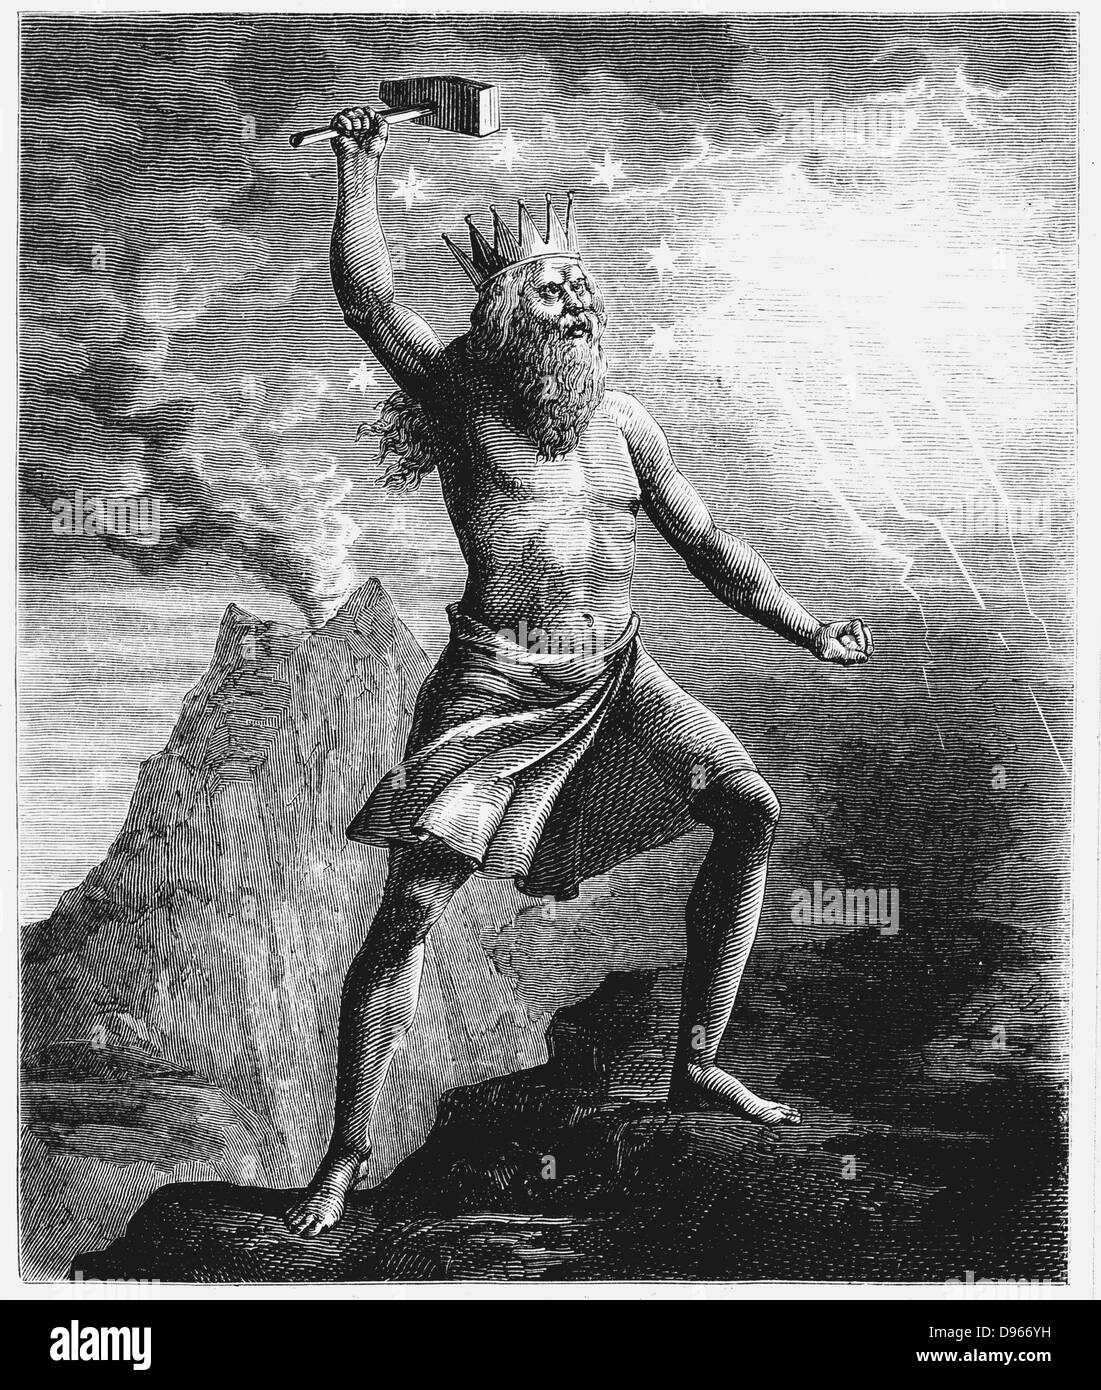 Thor, Sohn von Odin oder Odin. Gott des Donners in den skandinavischen Pantheon, dargestellt seinen Hammer schwingt, Symbol für Blitz und Donner, als er die Kugel wieder aufgebaut. Holzstich, 1874 Stockfoto